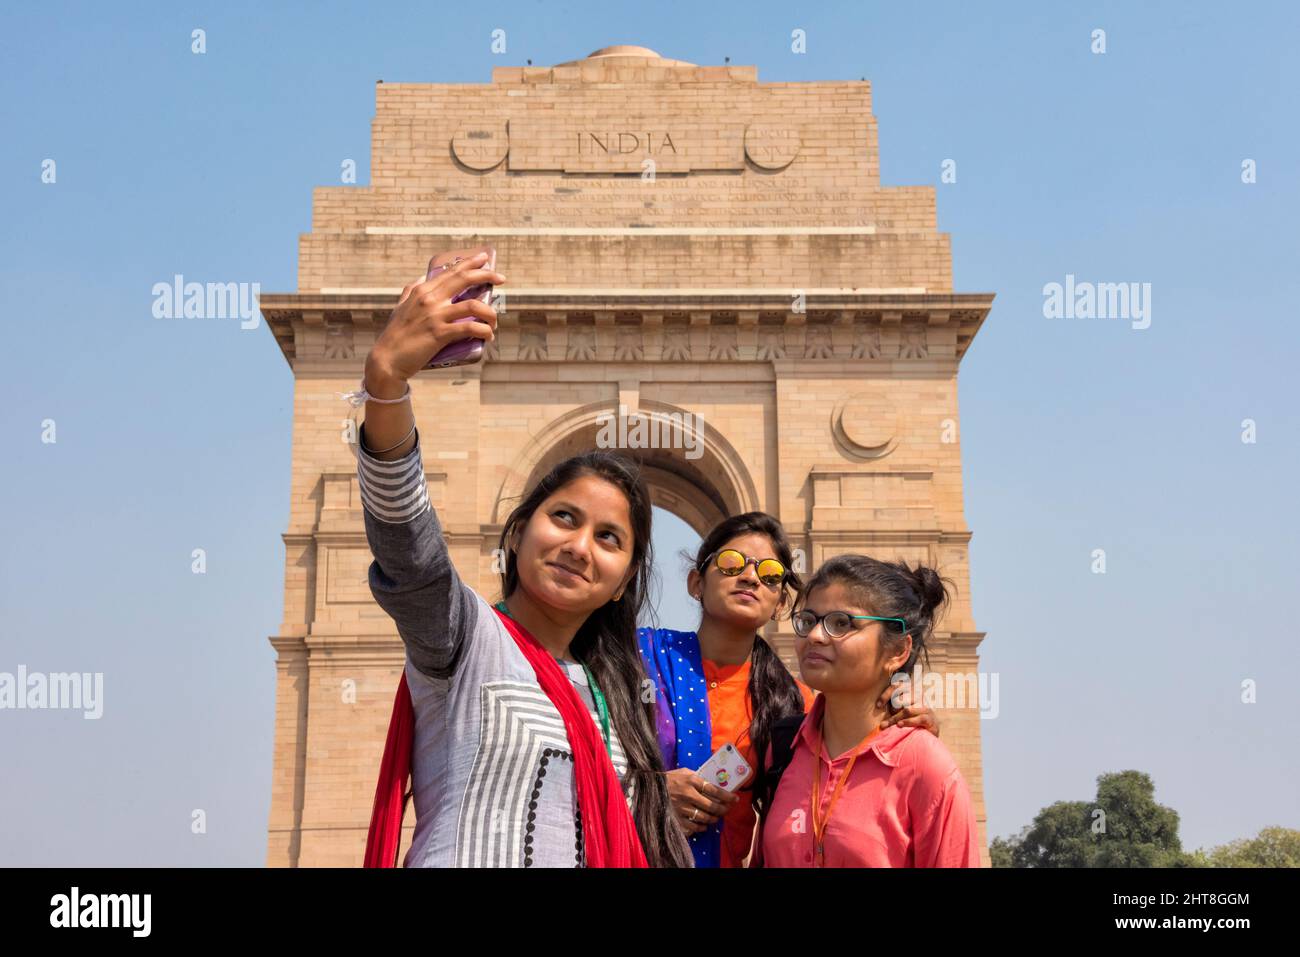 Touristes prenant le selfie à la porte de l'Inde, New Delhi, Inde Banque D'Images